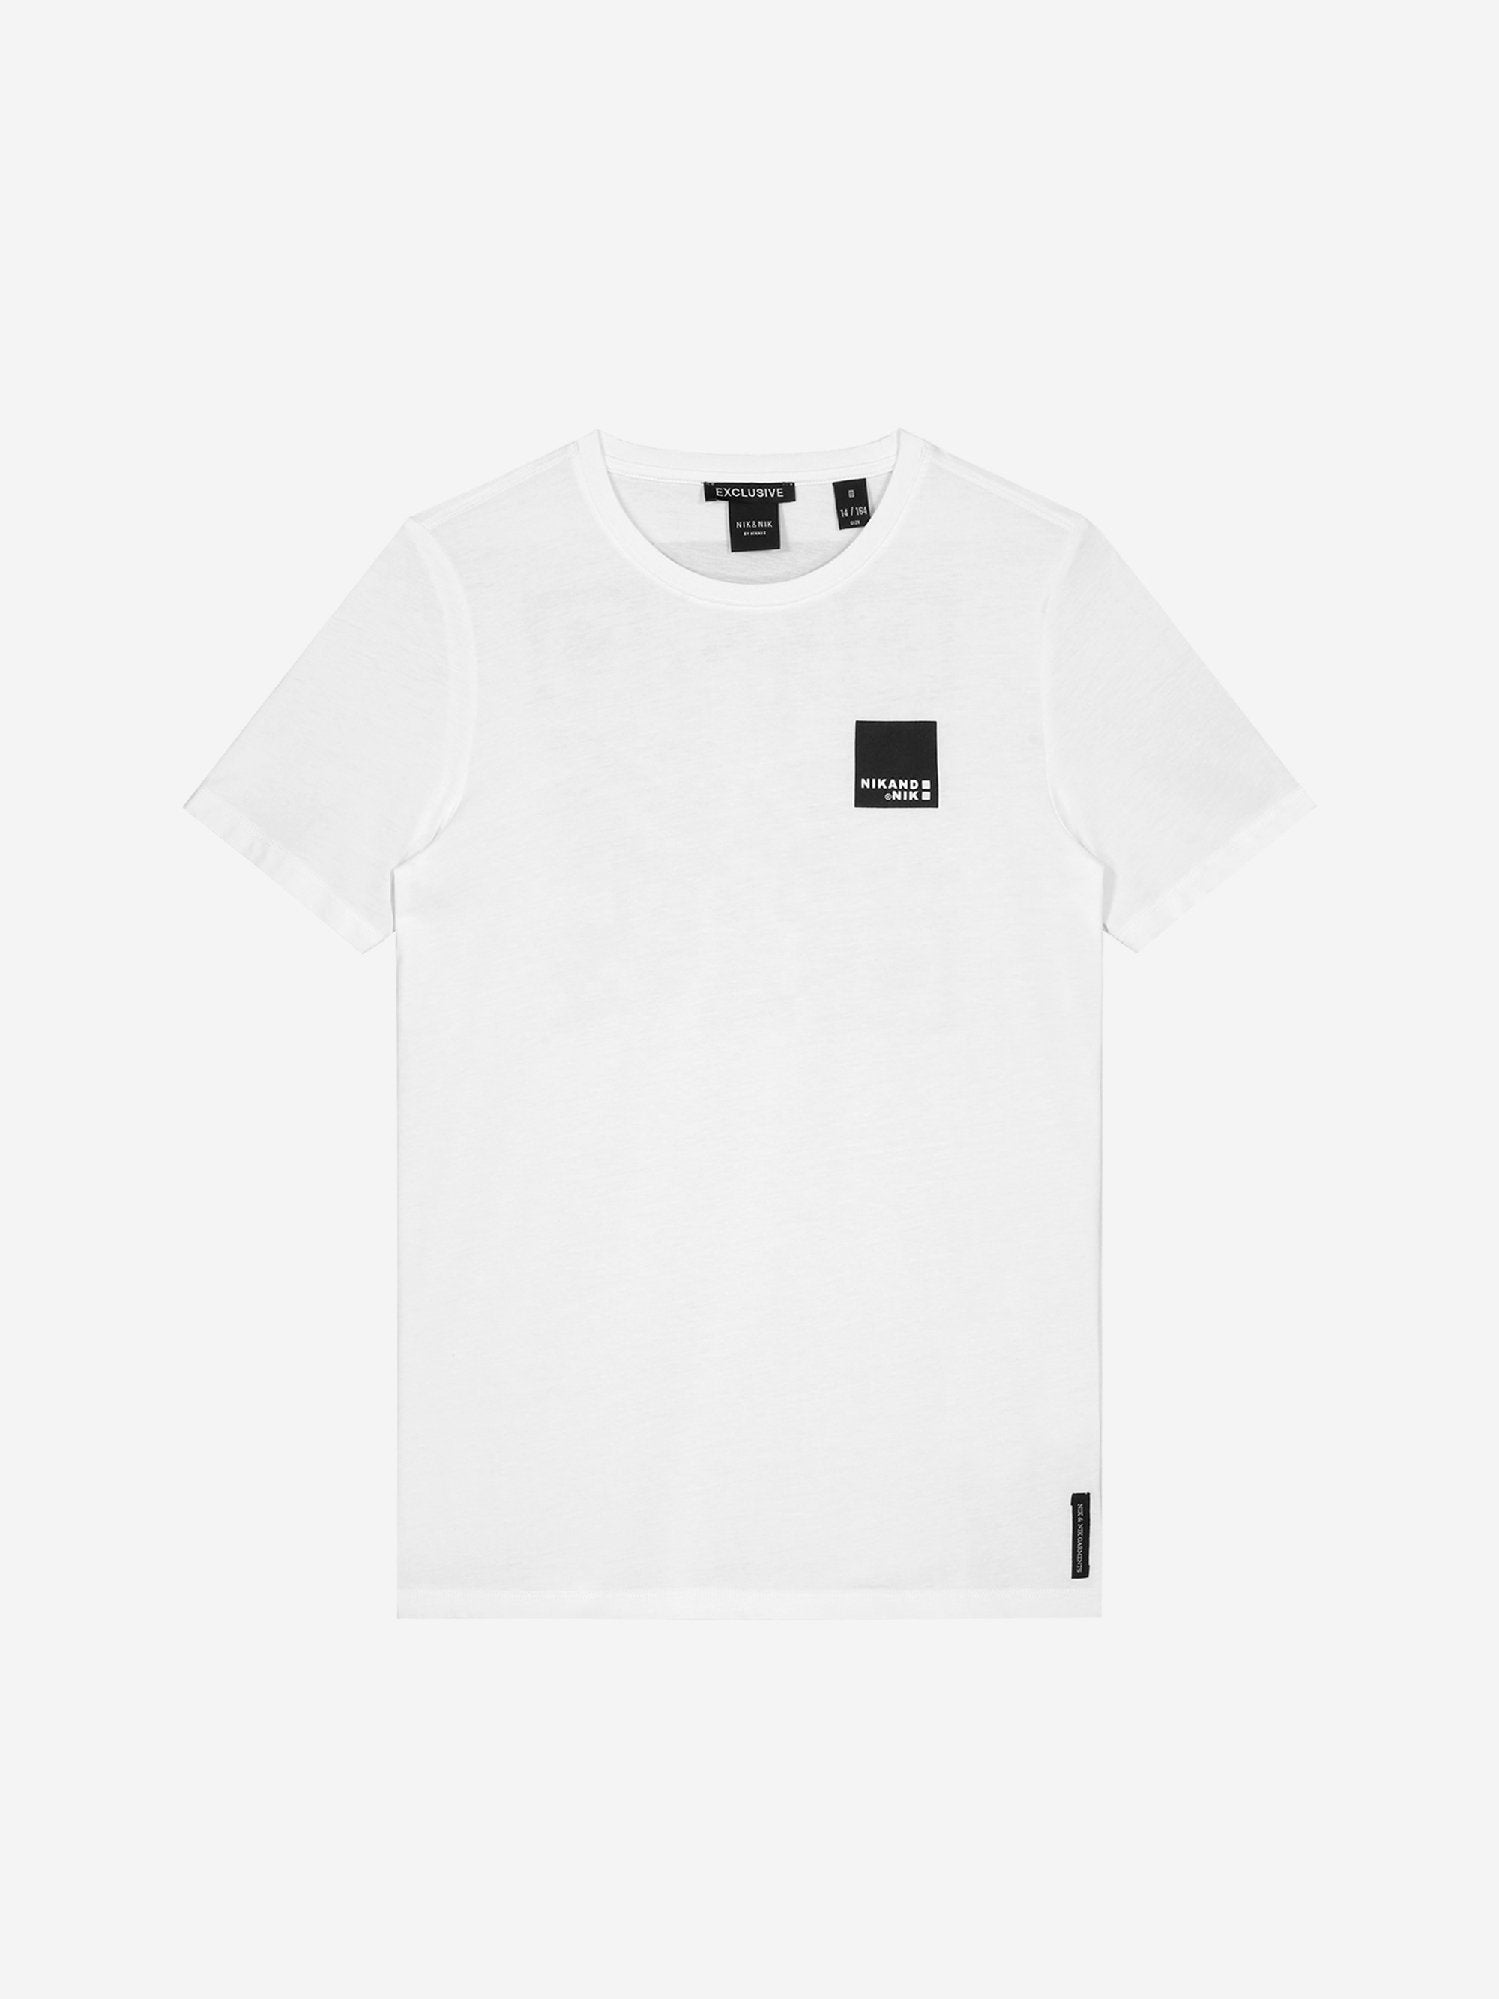 Jongens Marnix T-shirt van Nik & Nik in de kleur Off White in maat 164.